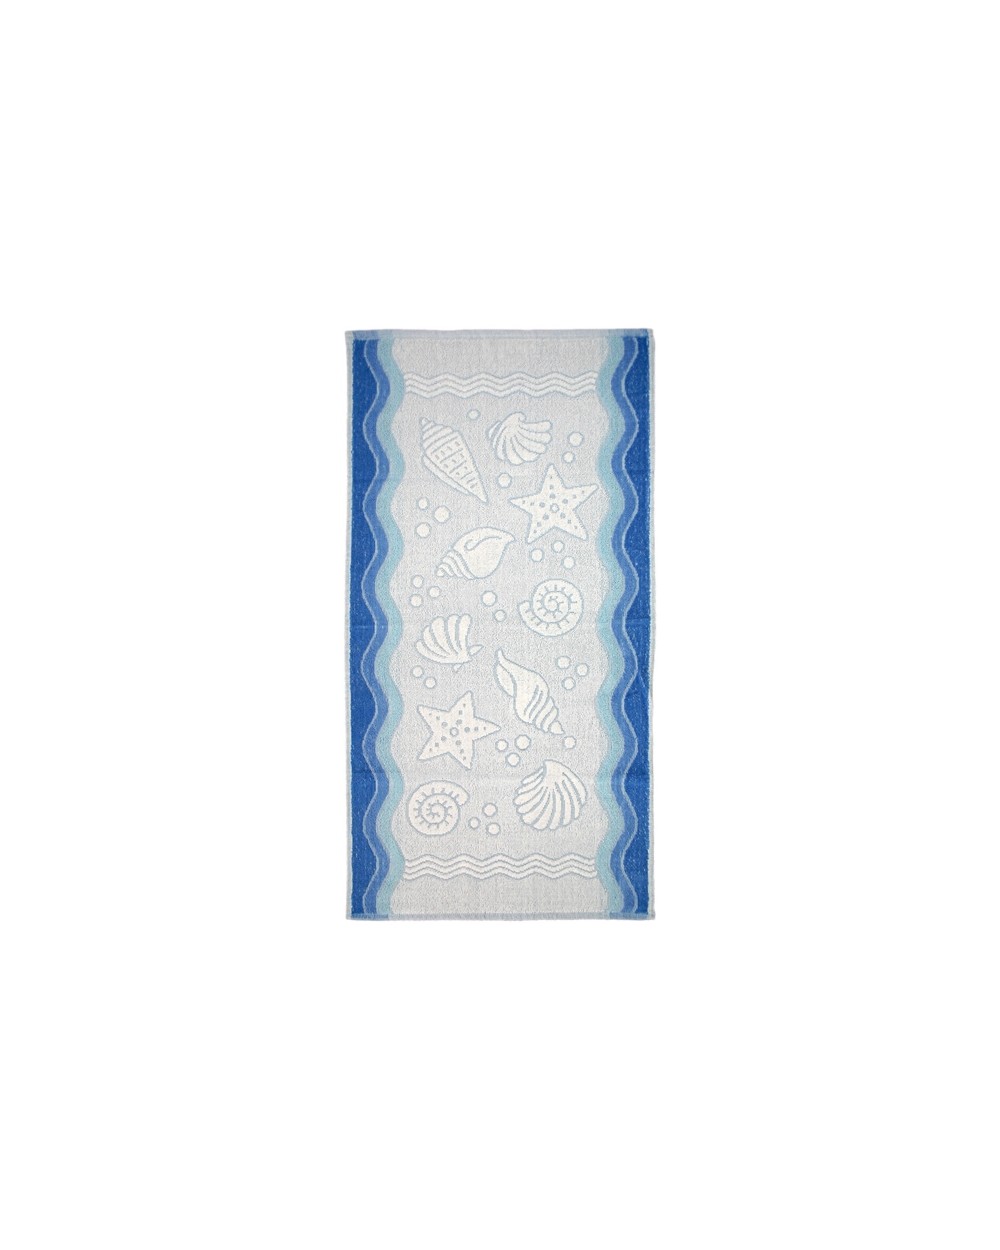 Ręcznik Flora Ocean bawełna 70x140 niebieski